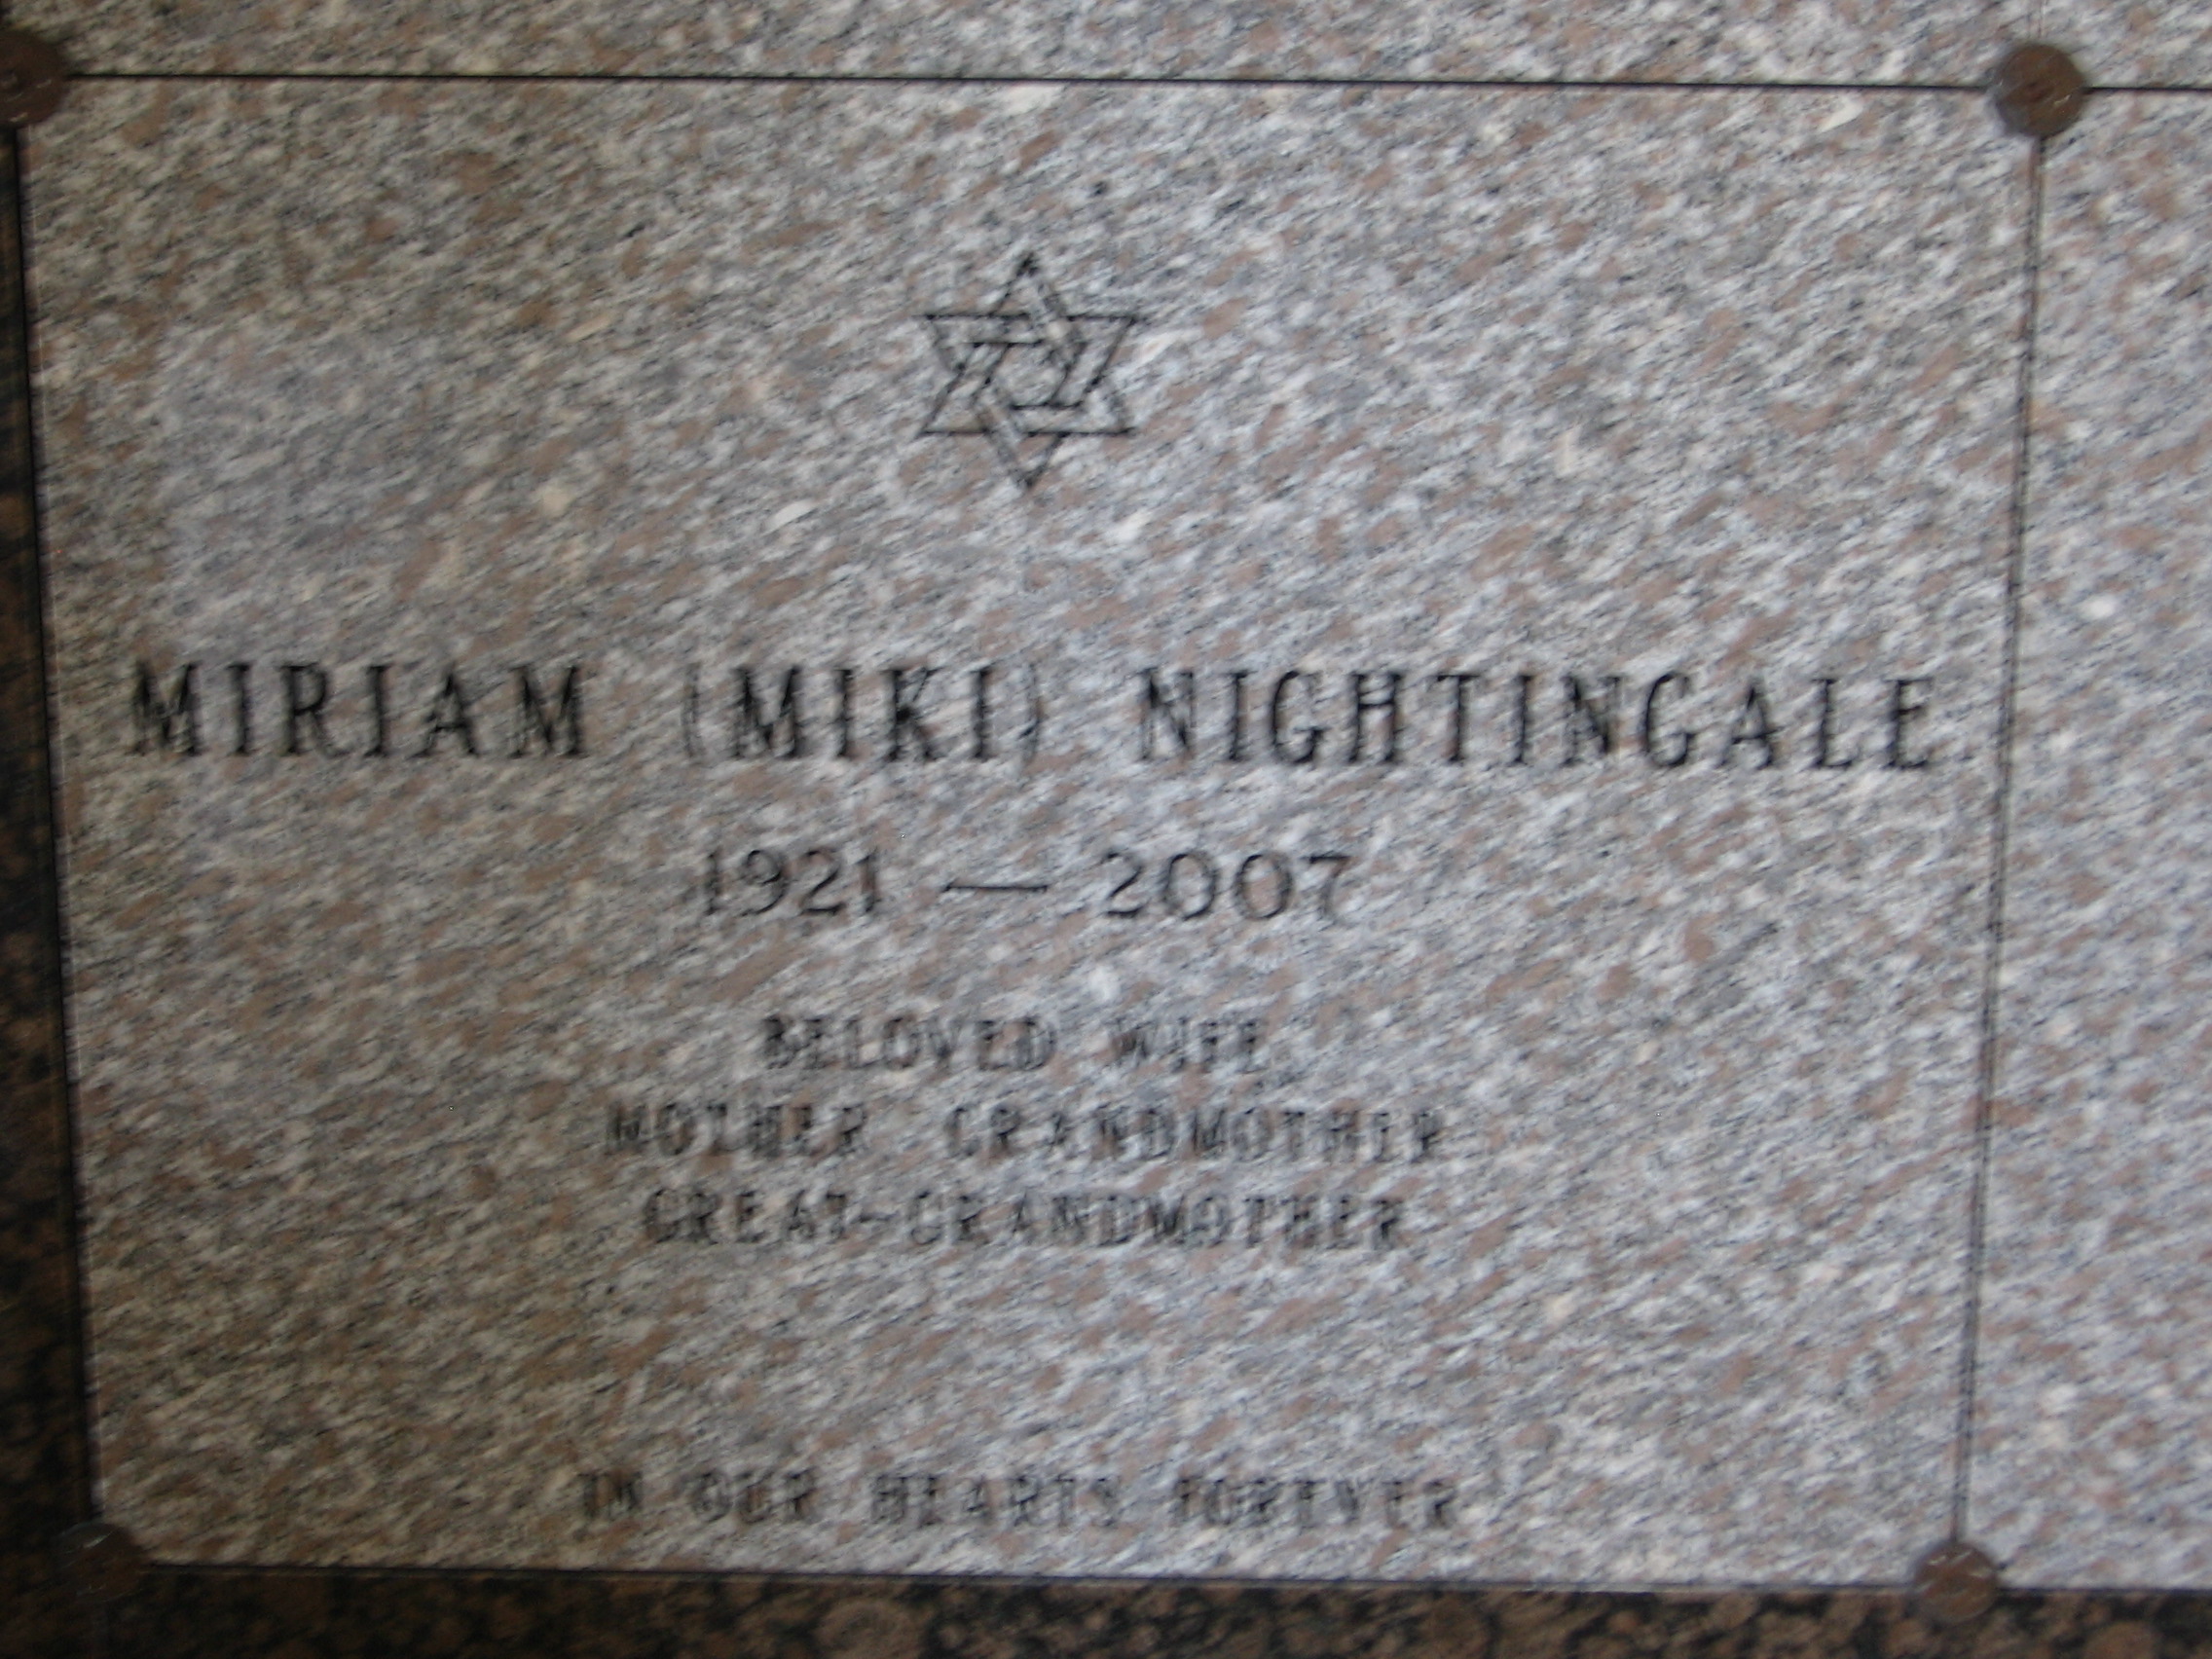 Miriam "Miki" Nightingale